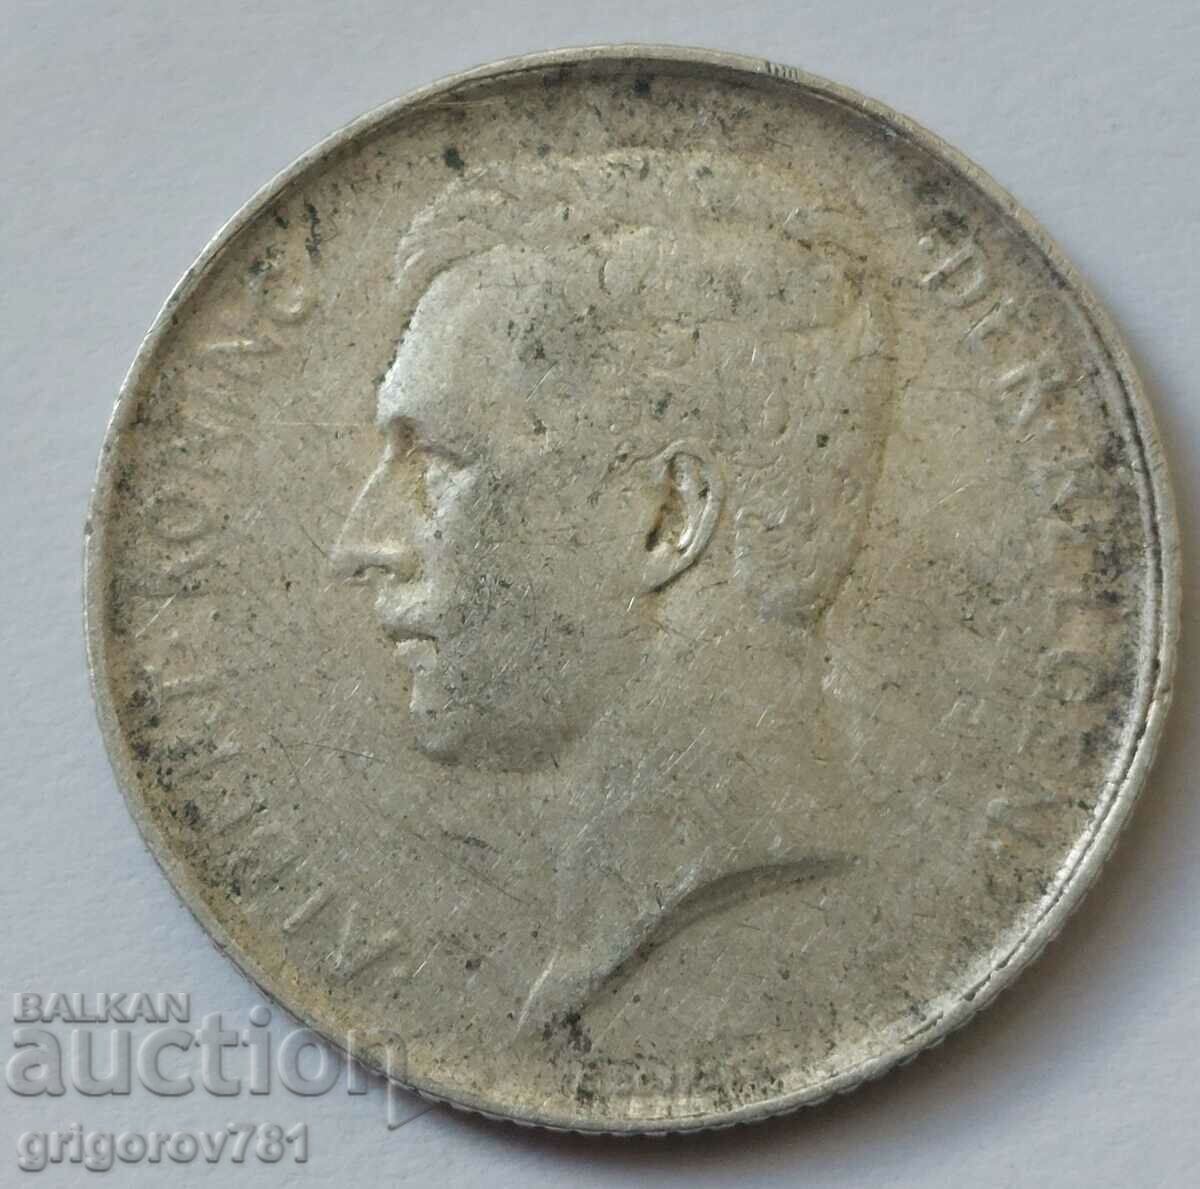 1 franc silver Belgium 1912 - silver coin #64